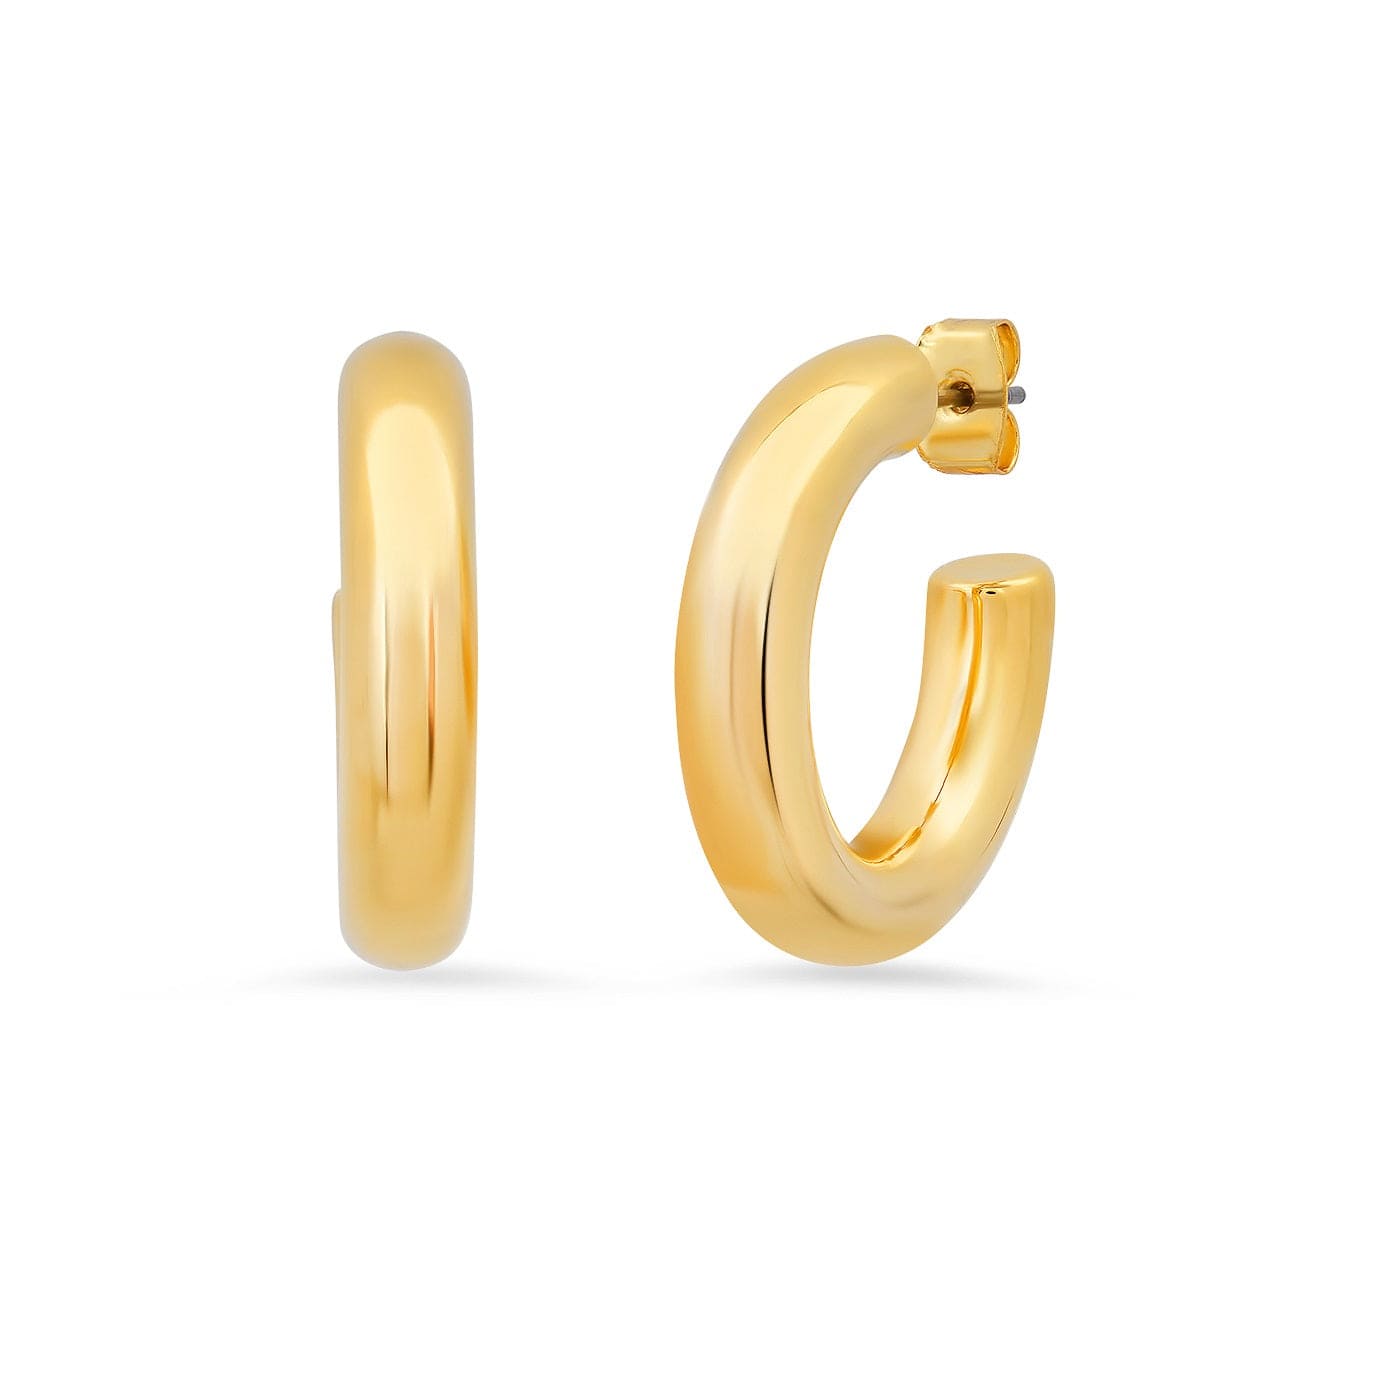 TAI JEWELRY Earrings Medium Gold Tubular Hoops